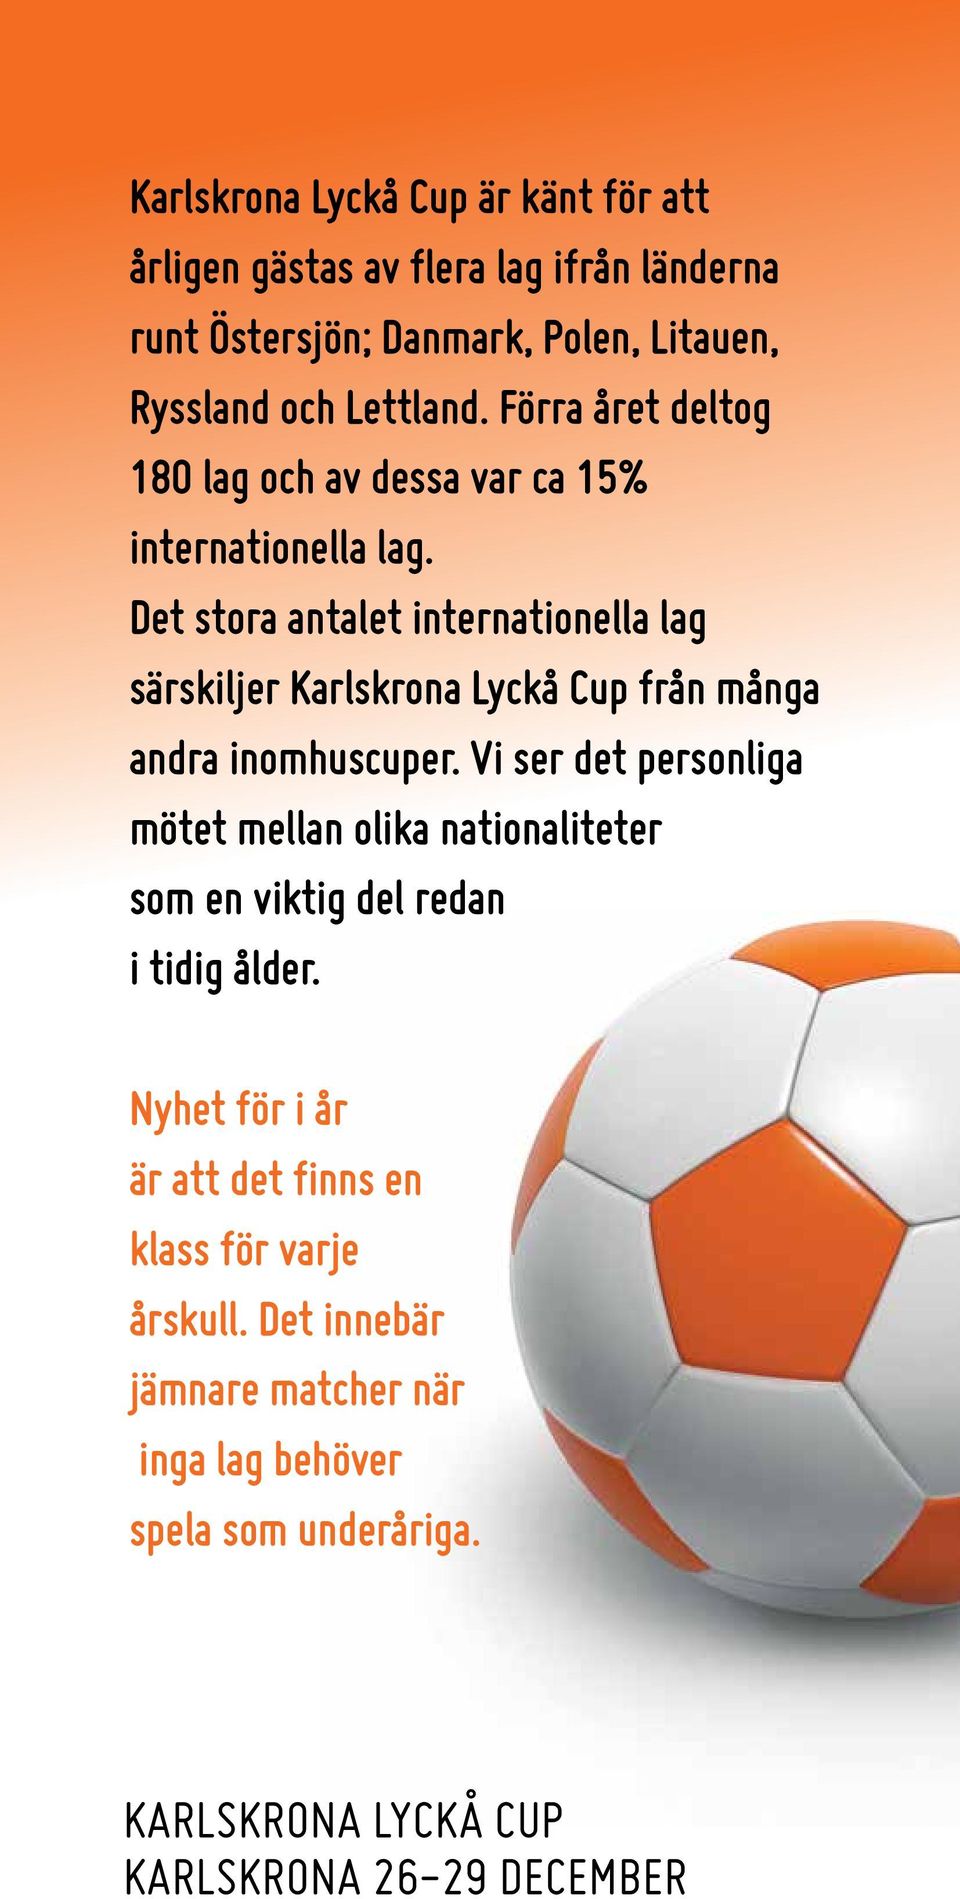 Det stora antalet internationella lag särskiljer Karlskrona Lyckå Cup från många andra inomhuscuper.